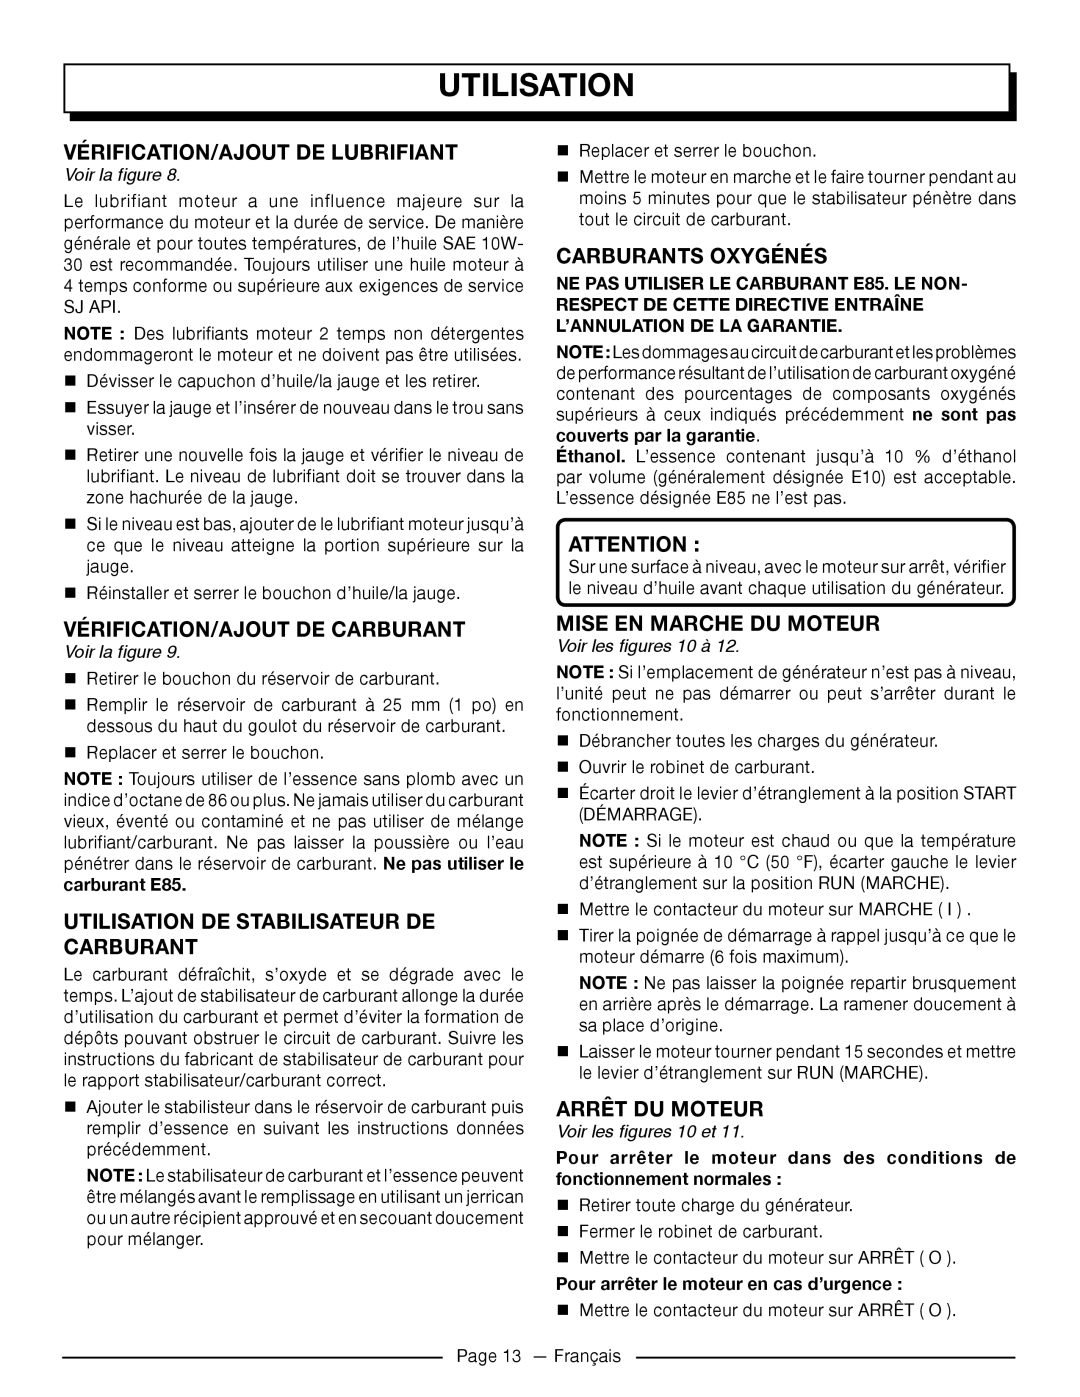 Homelite UT905011 Vérification/Ajout De Lubrifiant, Carburants Oxygénés, Vérification/Ajout De Carburant, Arrêt Du Moteur 